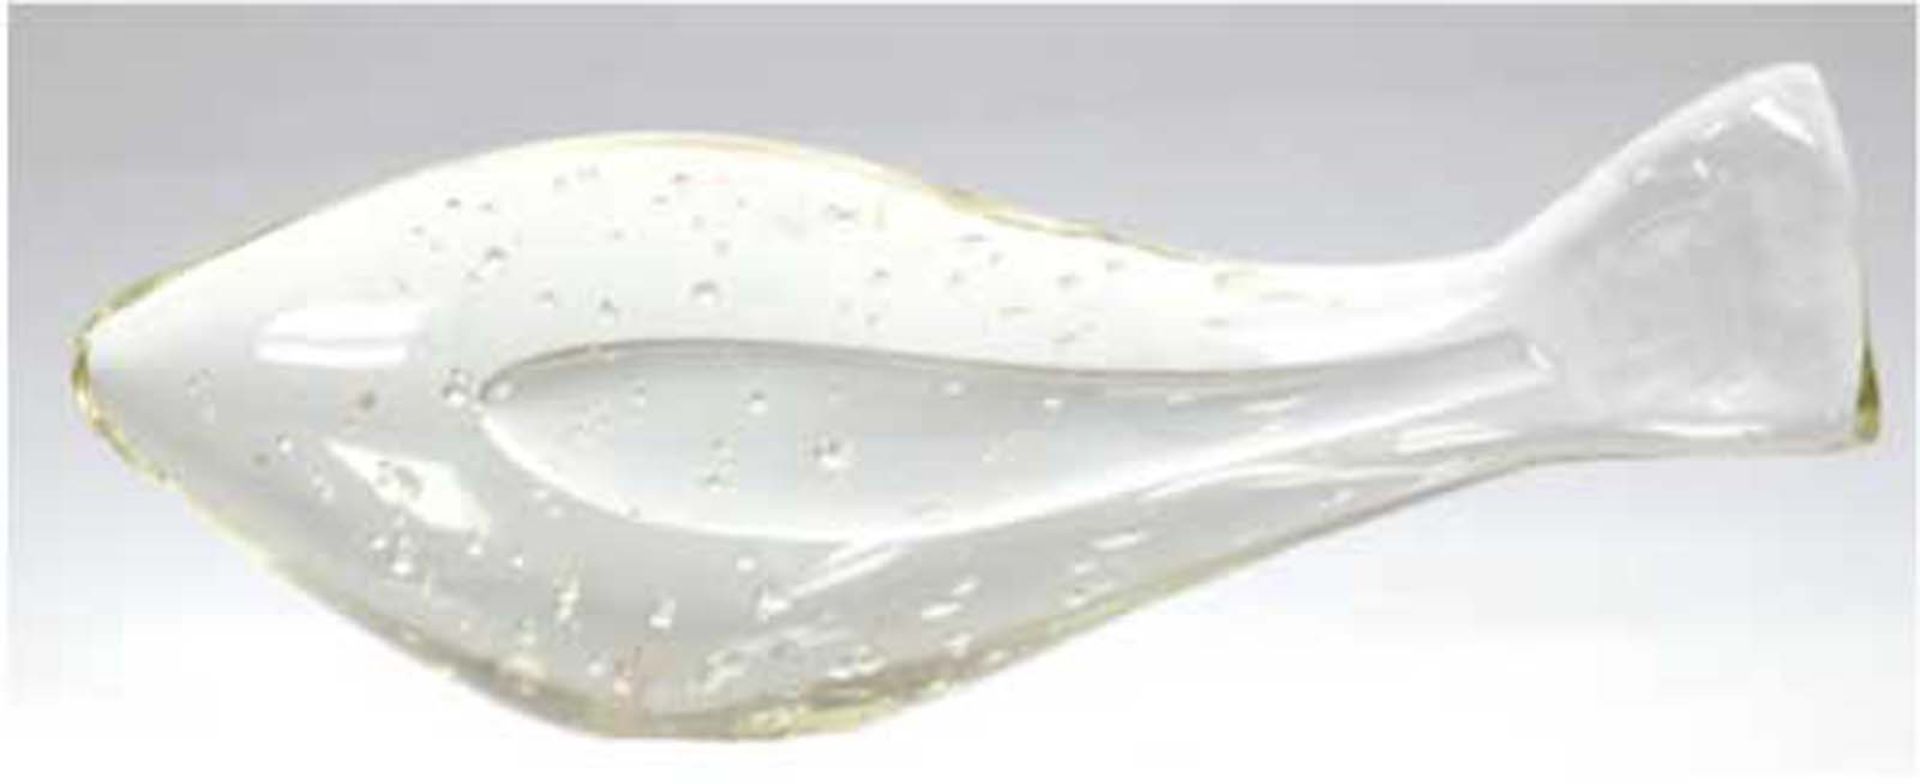 Glasobjekt "Fisch", gelbliches Glas mit Lufteinschlüssen, L. 31 cm